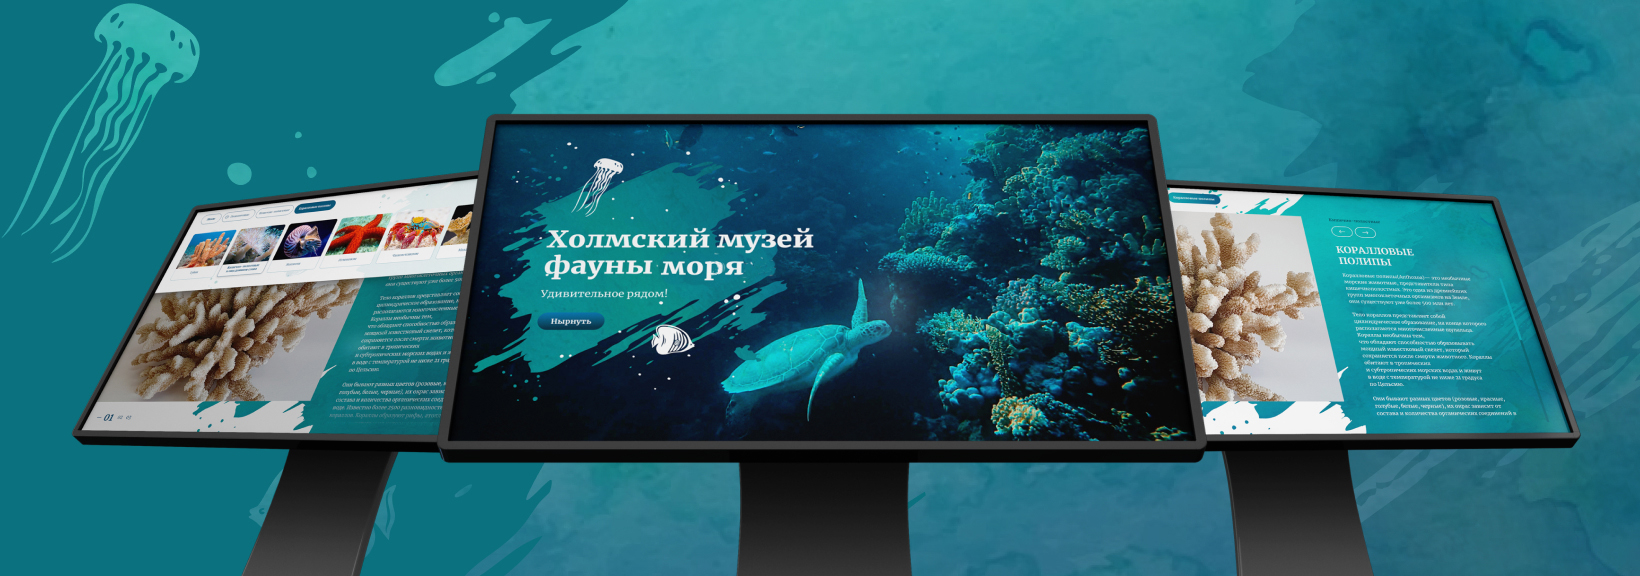 Интерактивное приложение «Фауна моря» 